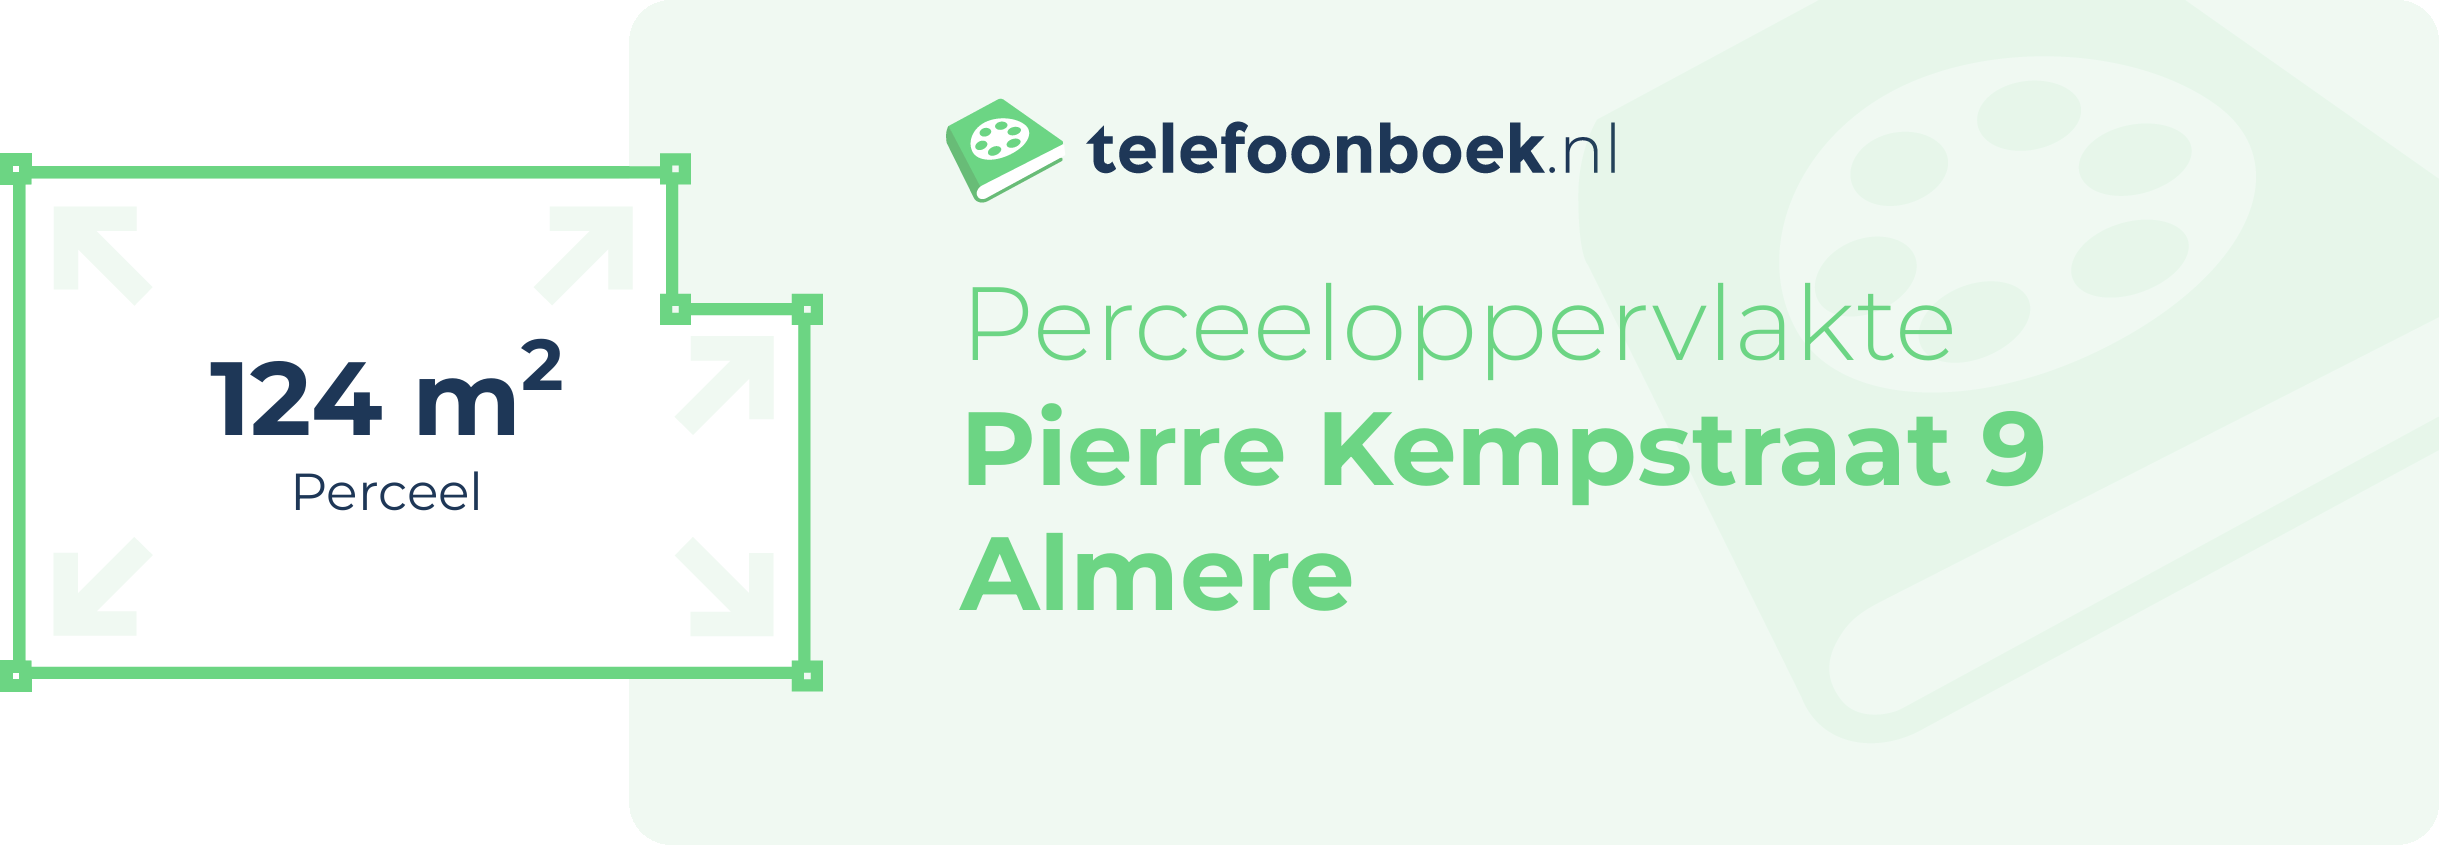 Perceeloppervlakte Pierre Kempstraat 9 Almere